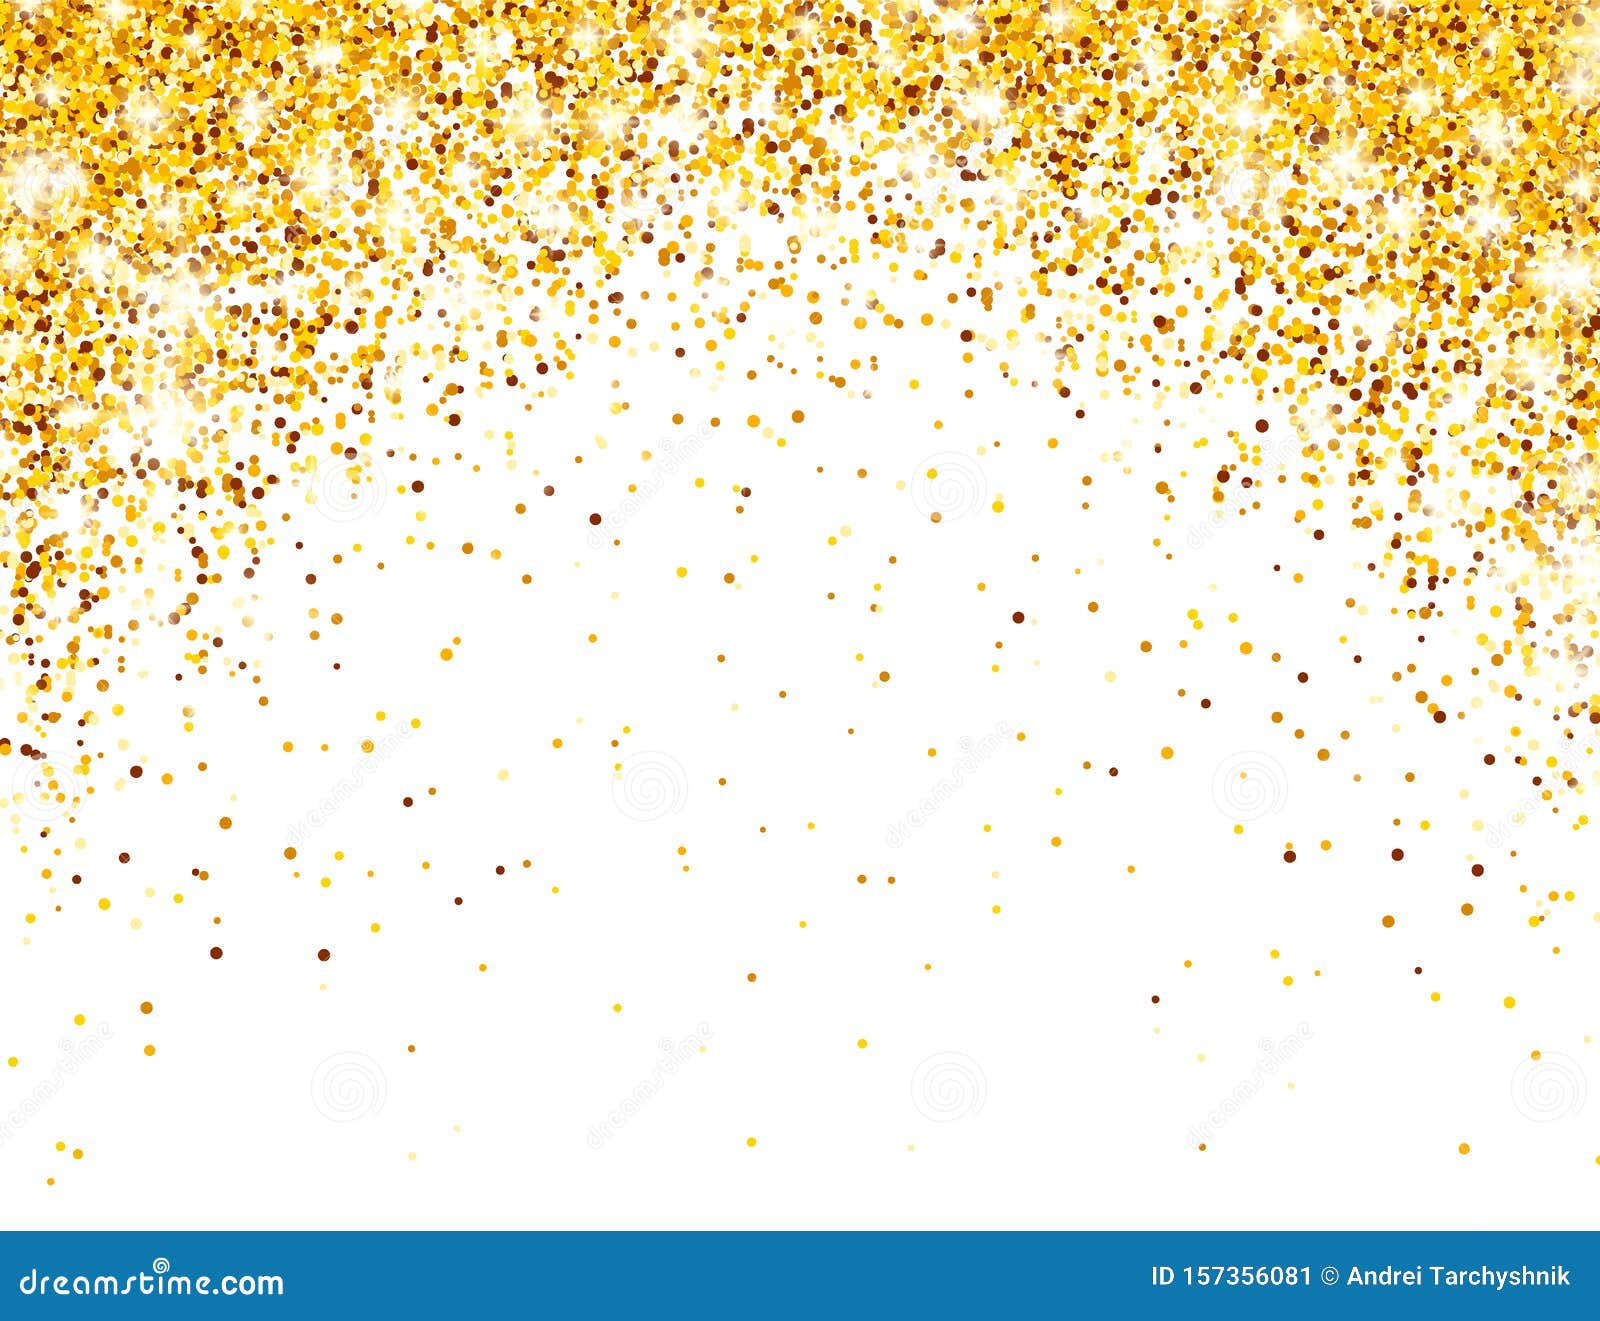 Sparkling Golden Glitter On White Vector Background Falling Shiny